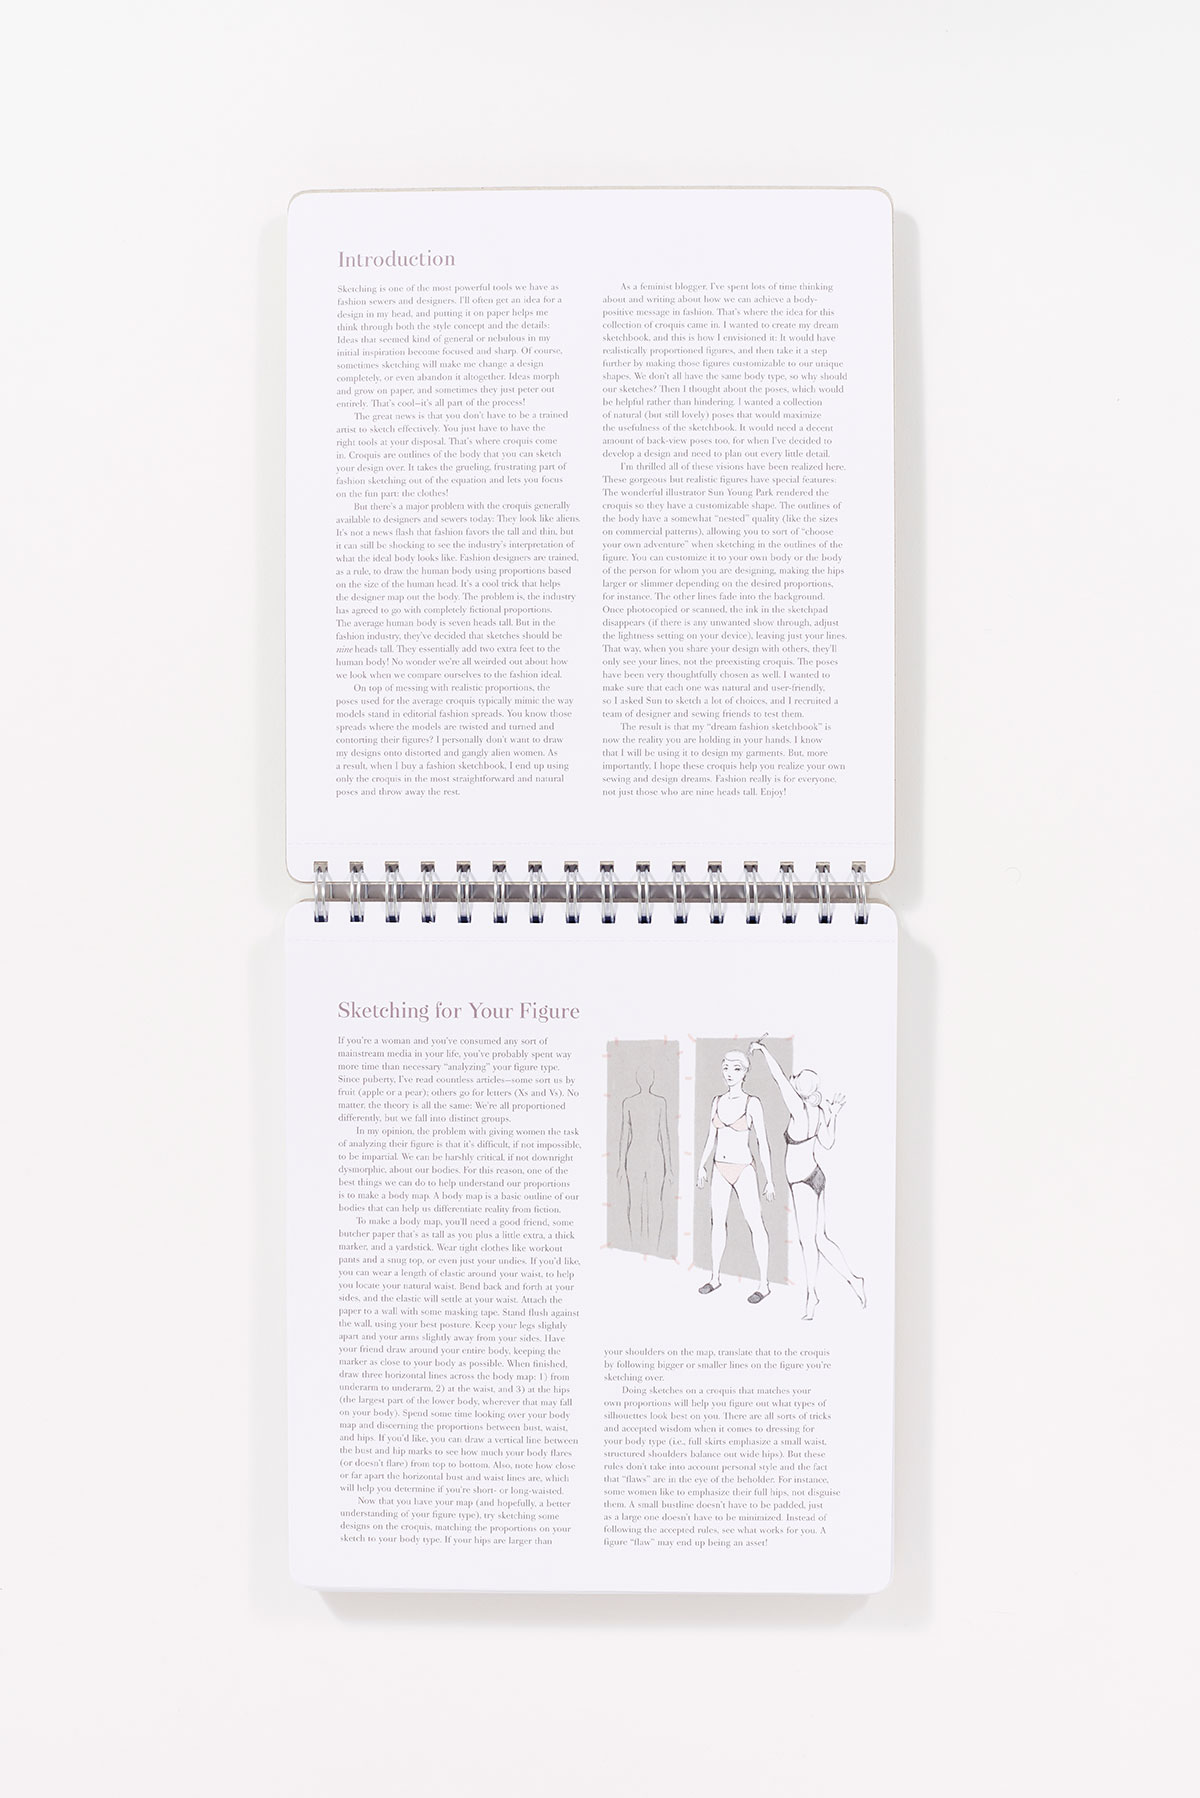 Fashion Design Journal Dot Grid Sketchbook Gift For Designer